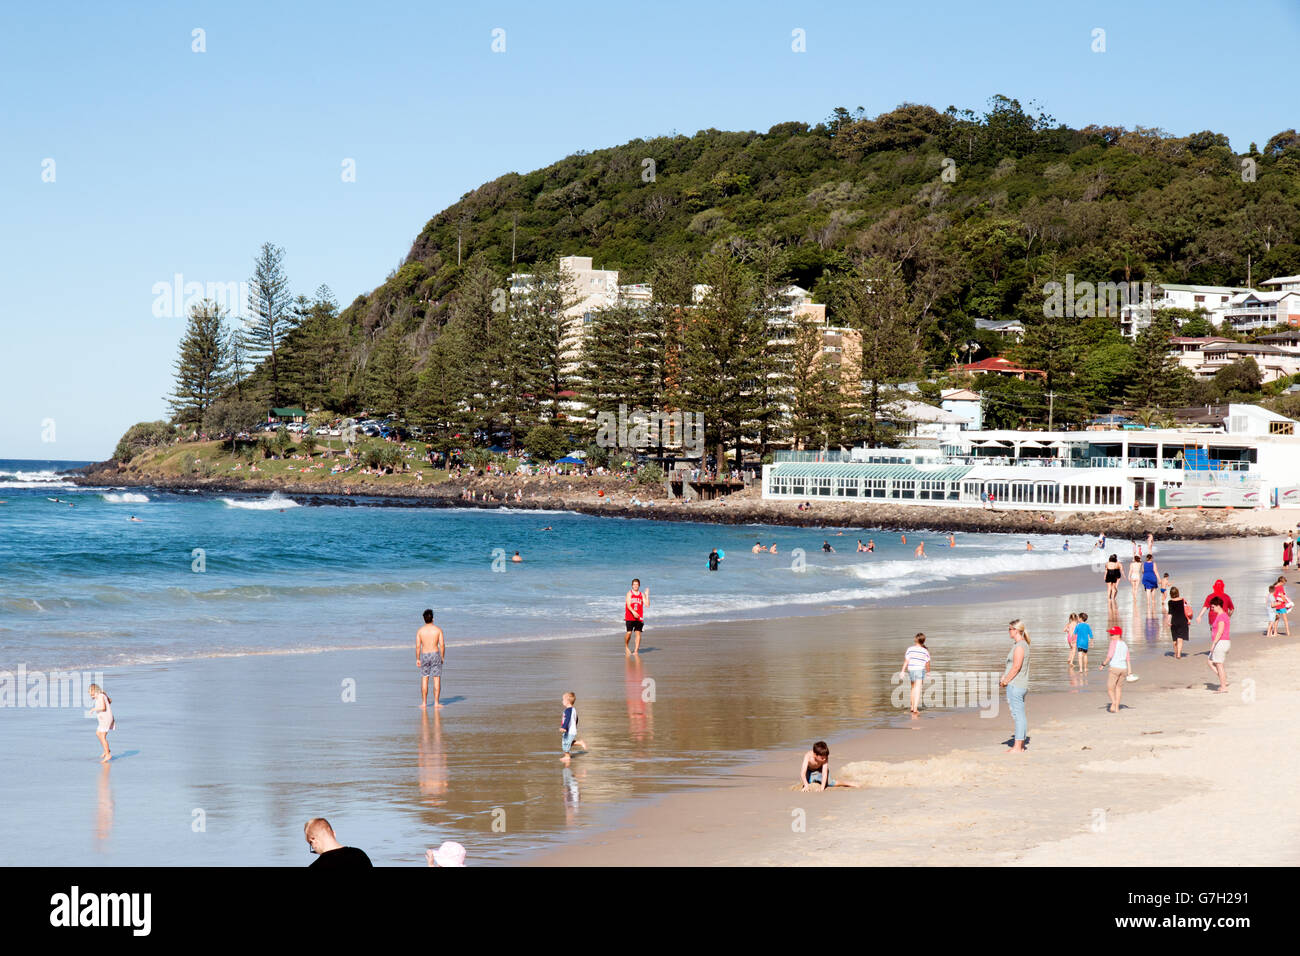 La plage de Burleigh Heads dans la région de Gold Coast de l'Australie Banque D'Images